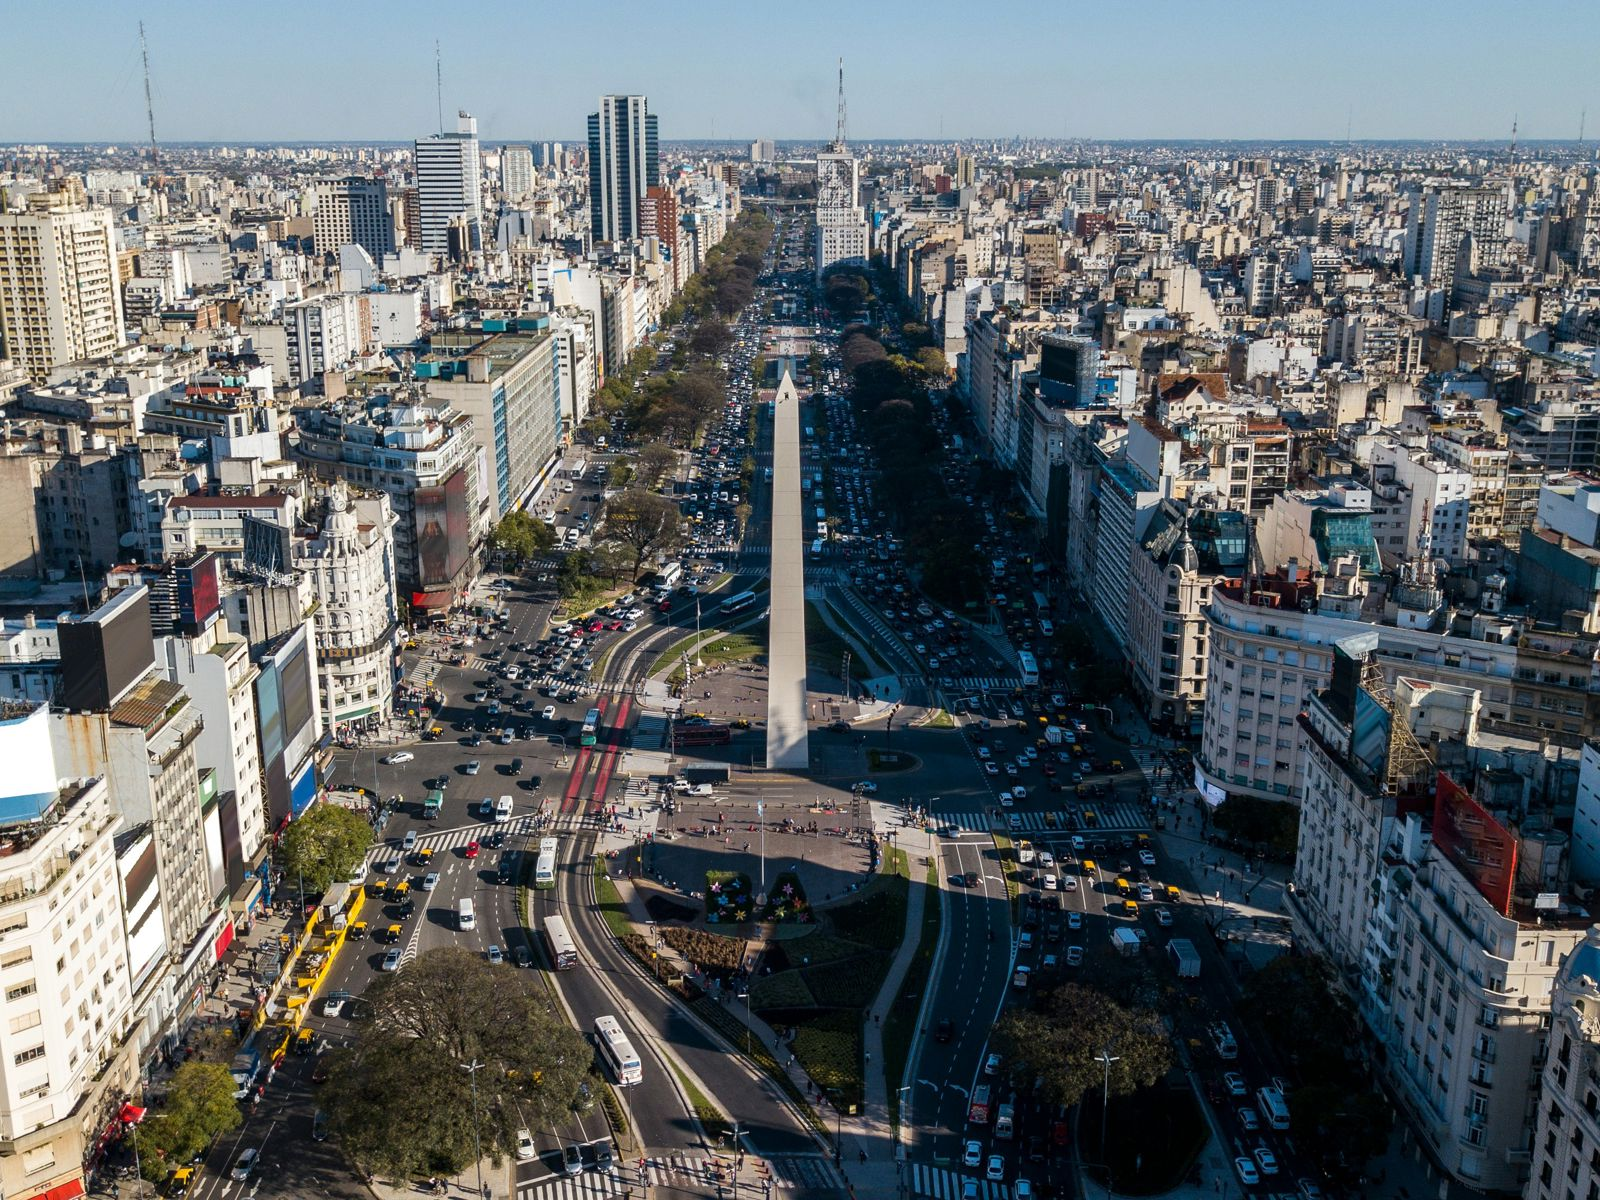 Resa till Buenos Aires - Flygfoto över tät stadstrafik och byggnader i Buenos Aires.